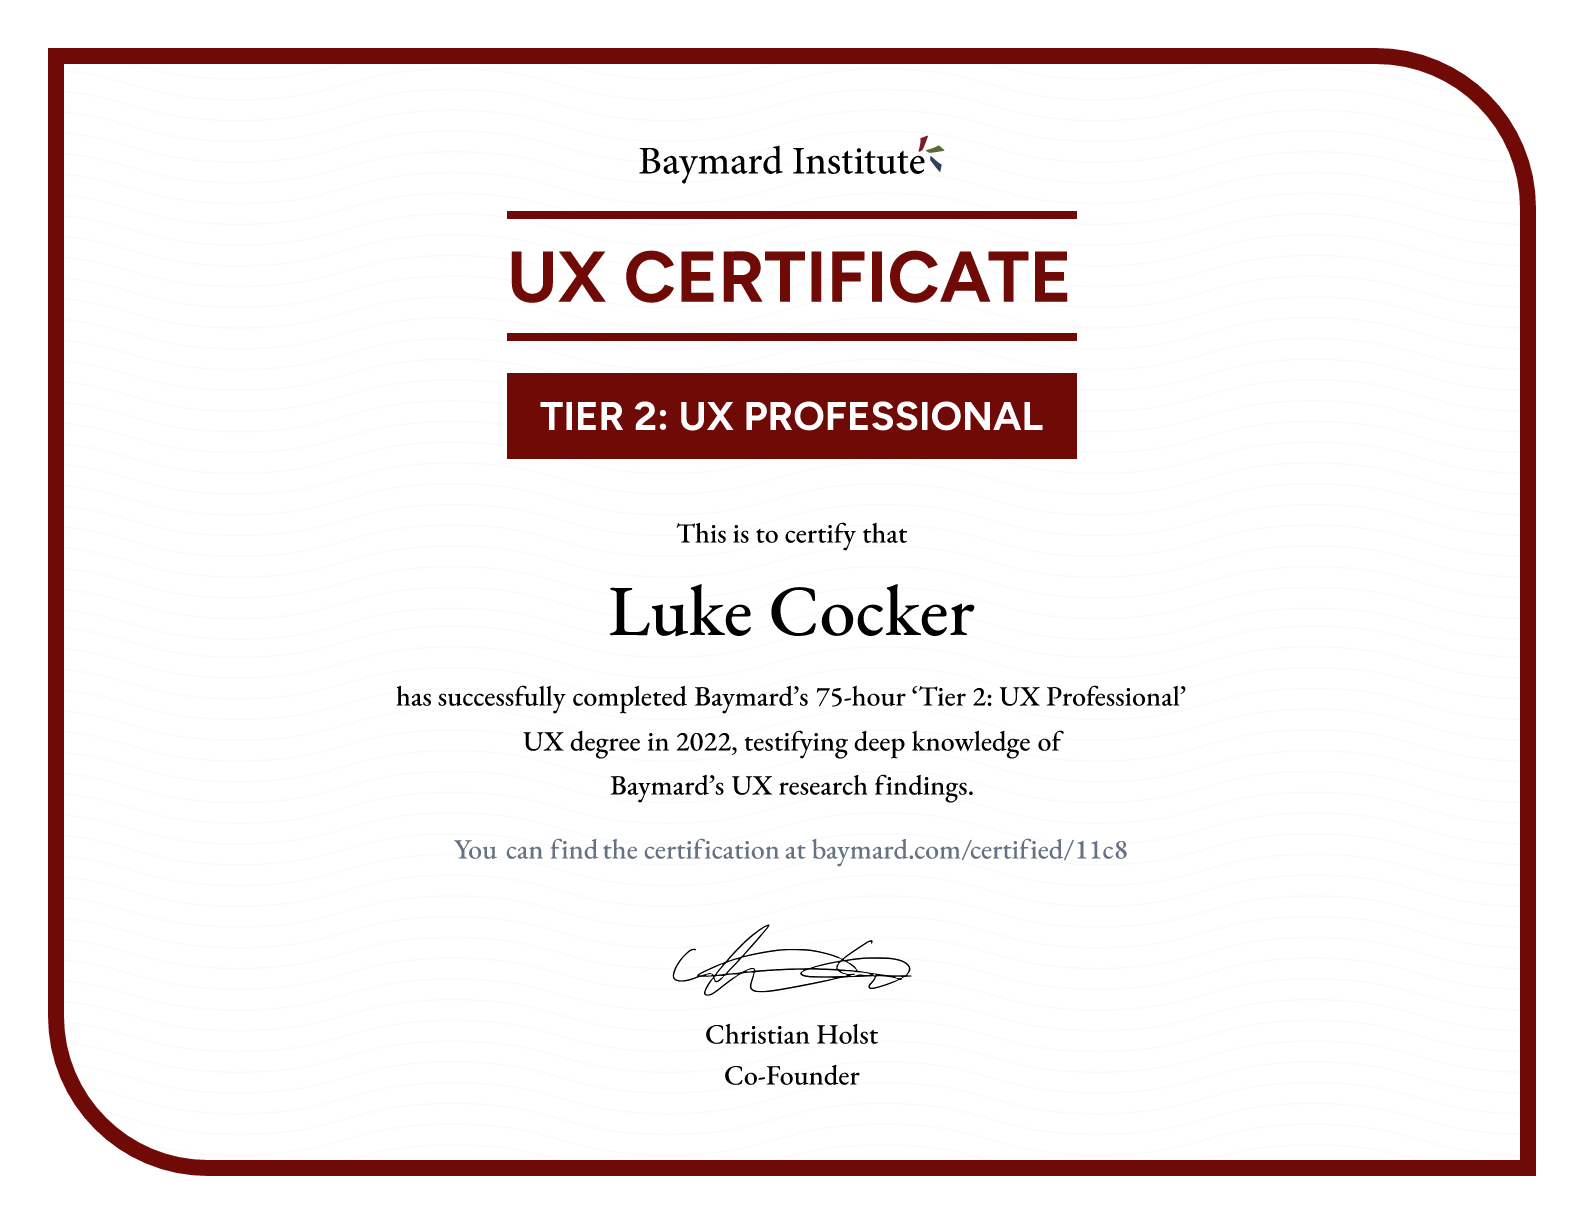 Luke Cocker’s certificate